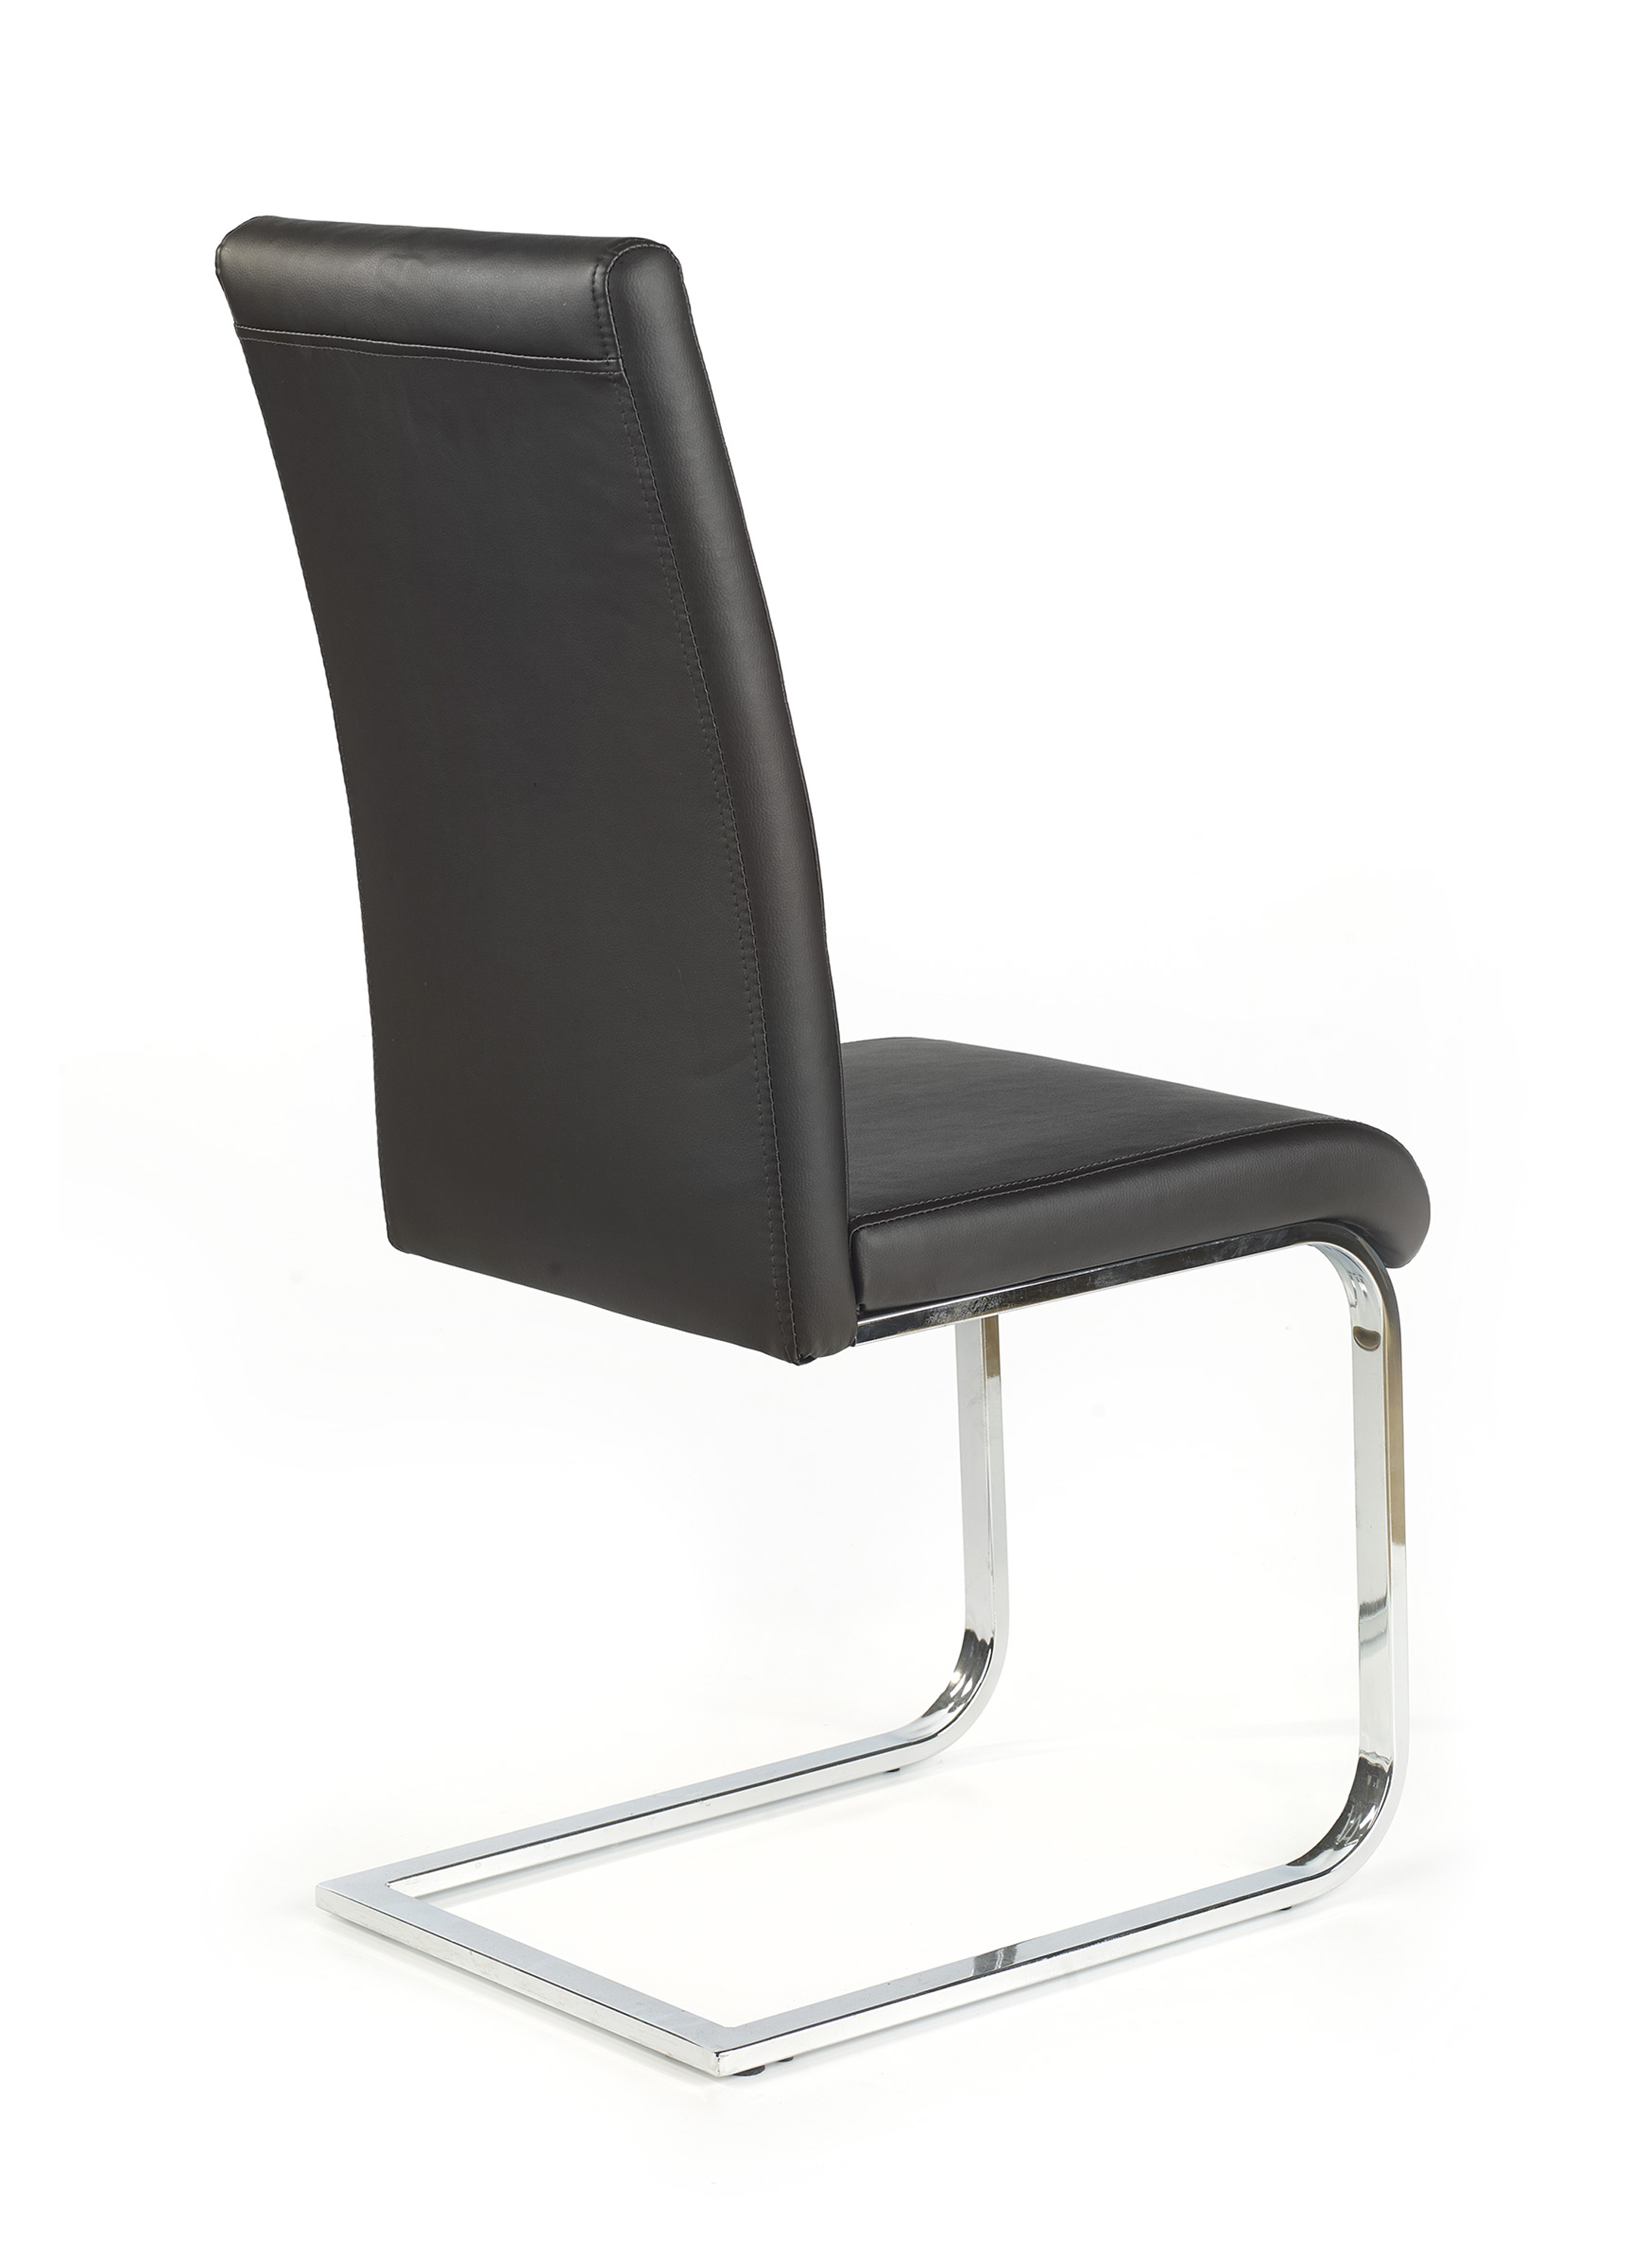 Židle K85 - Černá Židle k85 - Černý